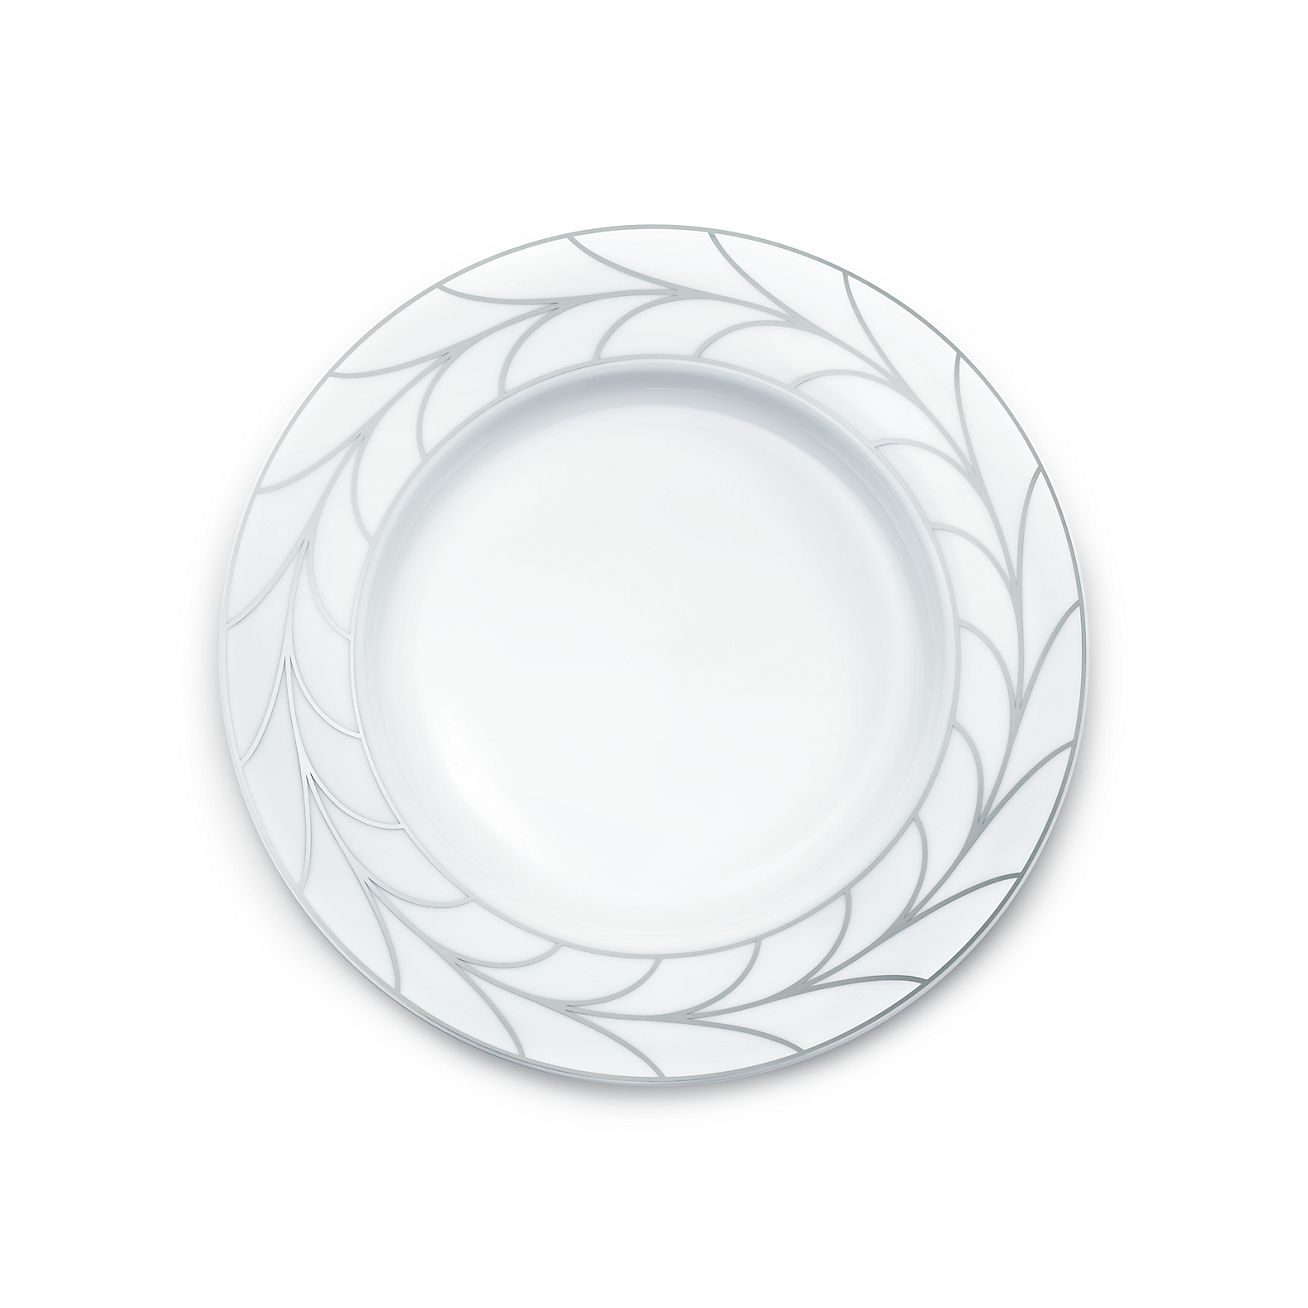 Wheat Leaf dinner plate in bone china 